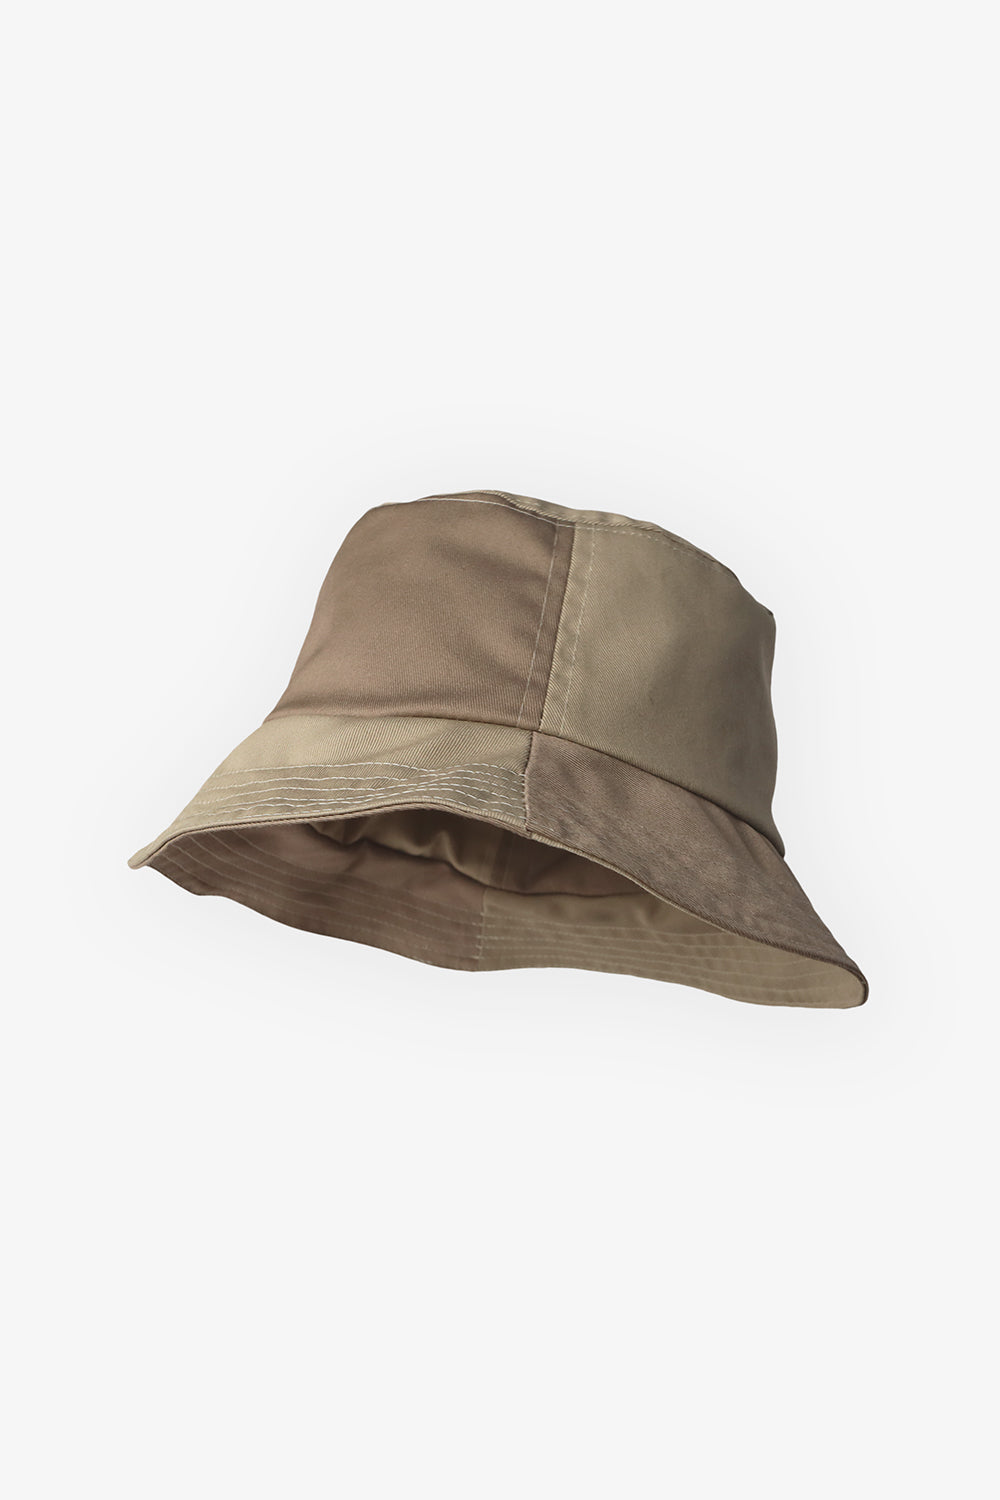 Mirage Bucket Hat Pattern